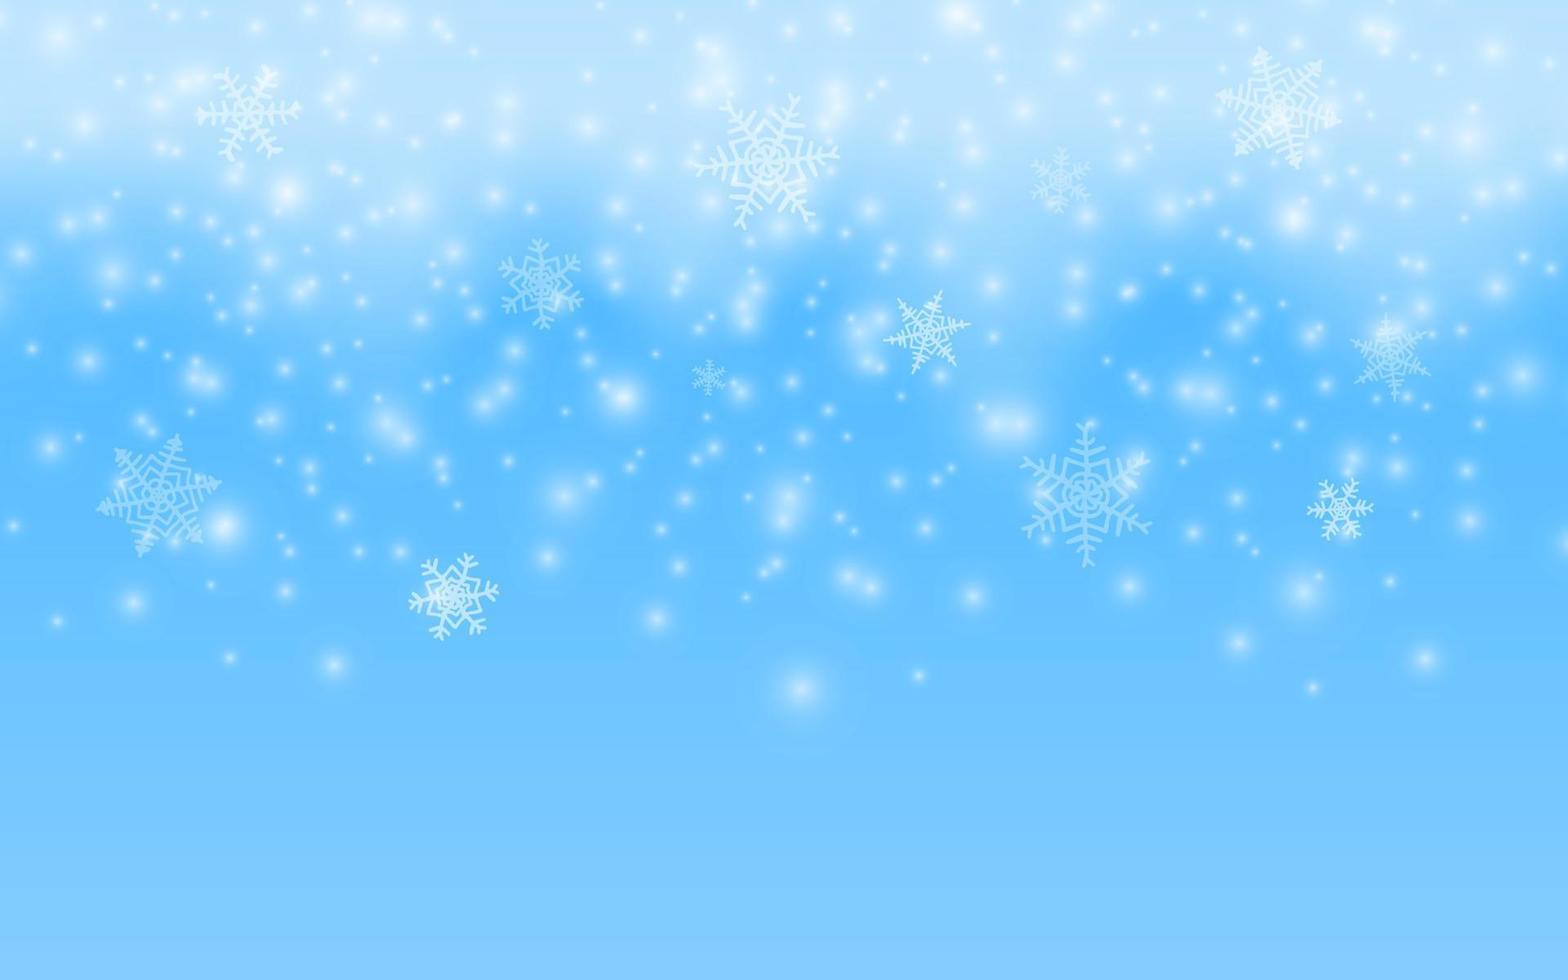 cena da temporada de inverno. fundo de neve de feliz natal. vector ilustração 3d flocos de neve brilhantes caindo. paisagem de inverno, céu azul, tempestade de neve. espaço vazio para design de produto.